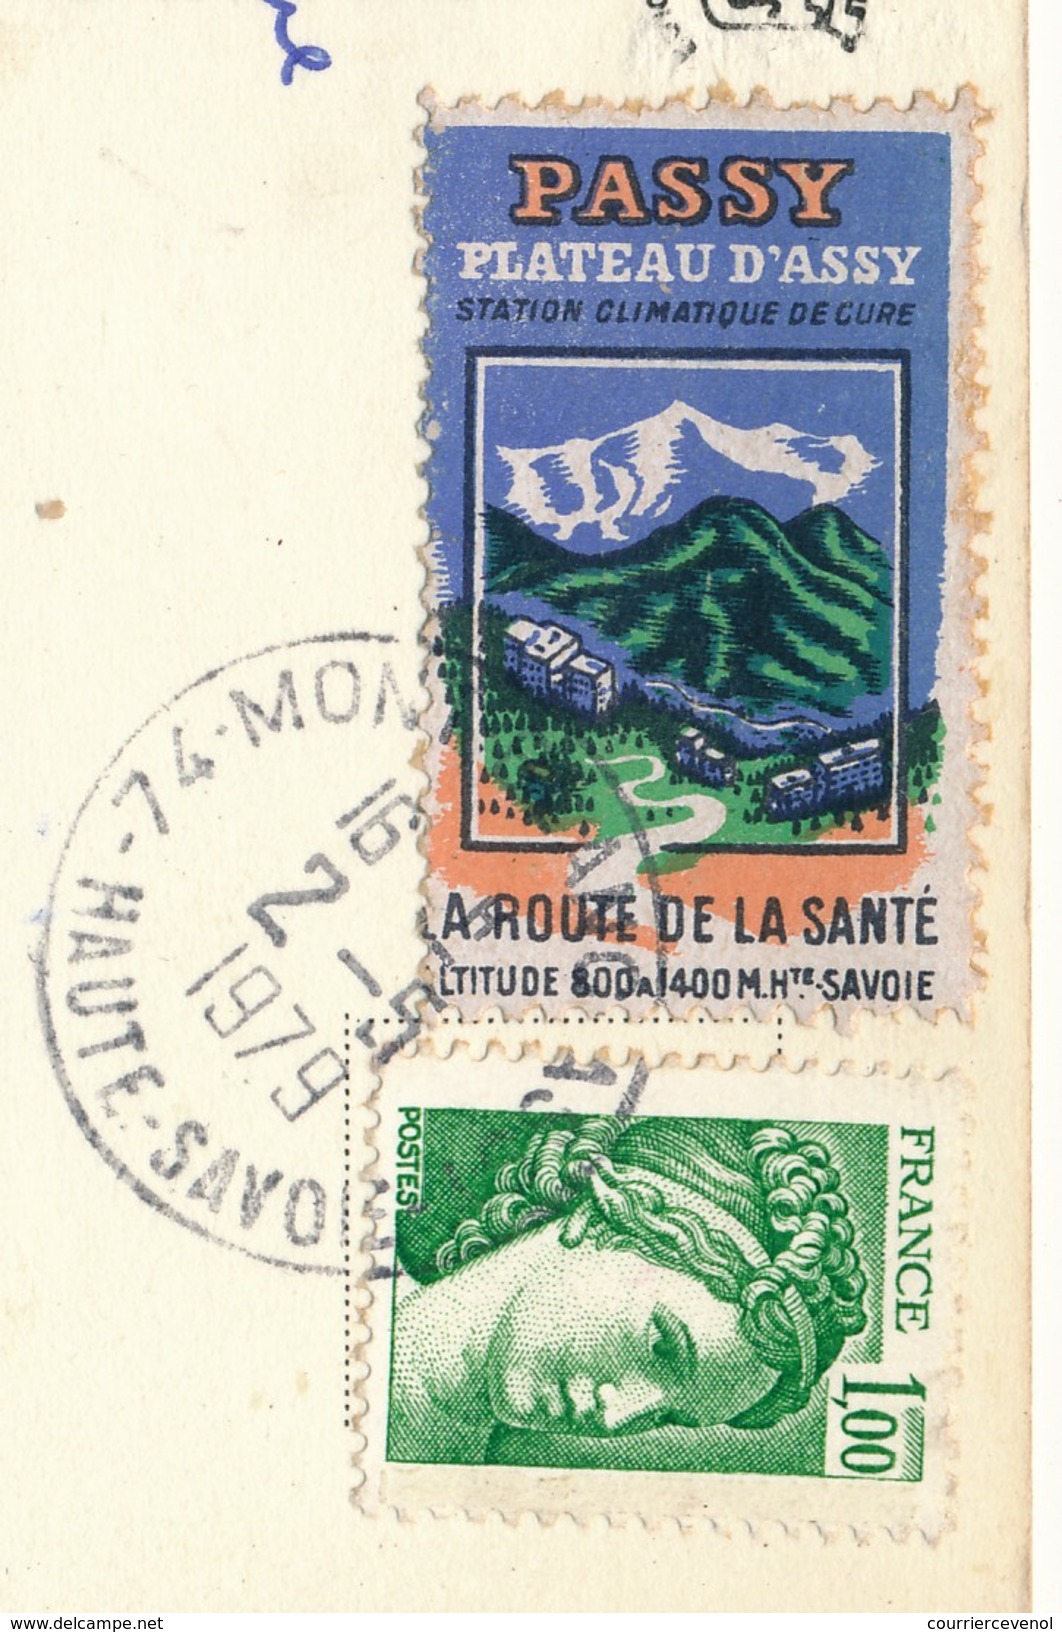 FRANCE => Vignette "Passy, Plateau D'Assy - La Route De La Santé" Sur Carte Postale 1979 - Briefe U. Dokumente